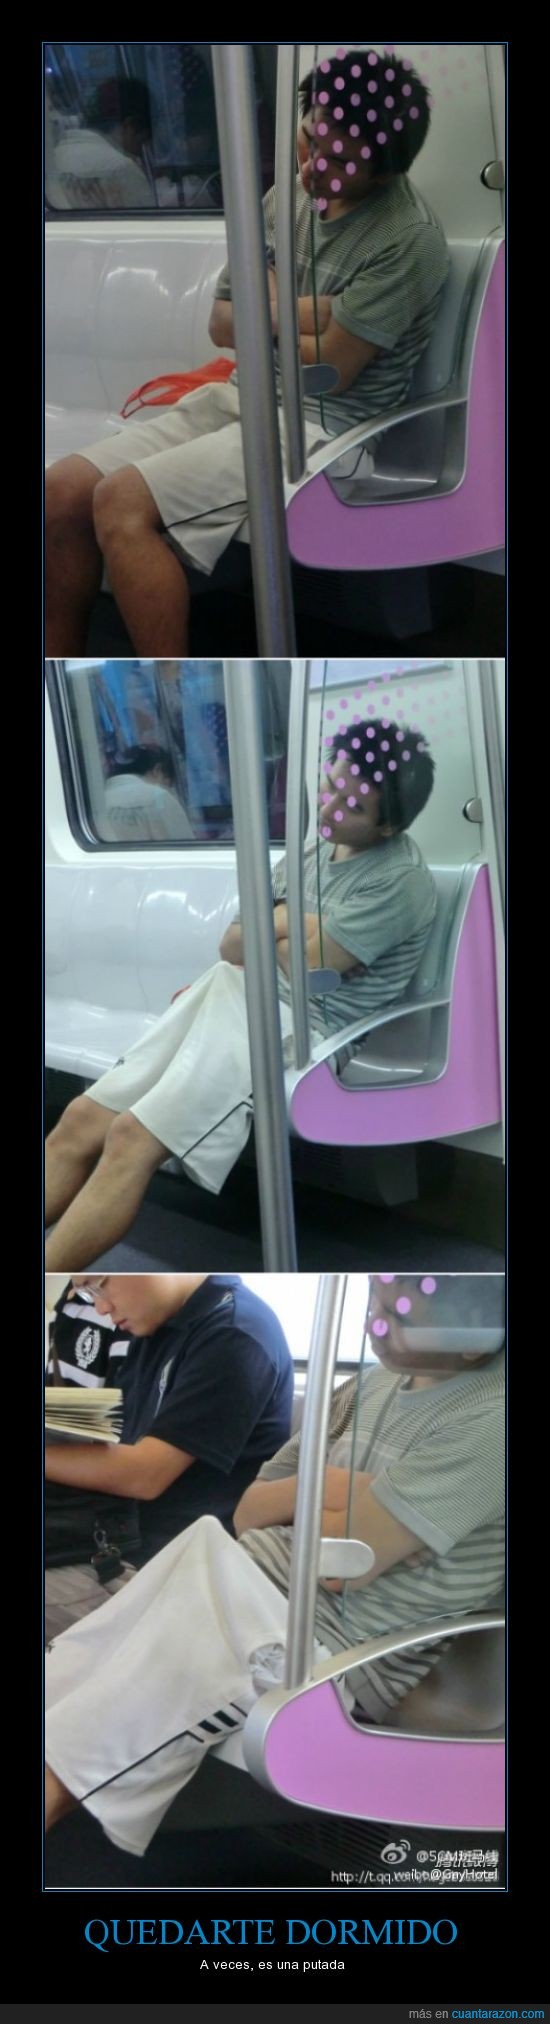 dormido,tio,tienda de campaña,chino,metro